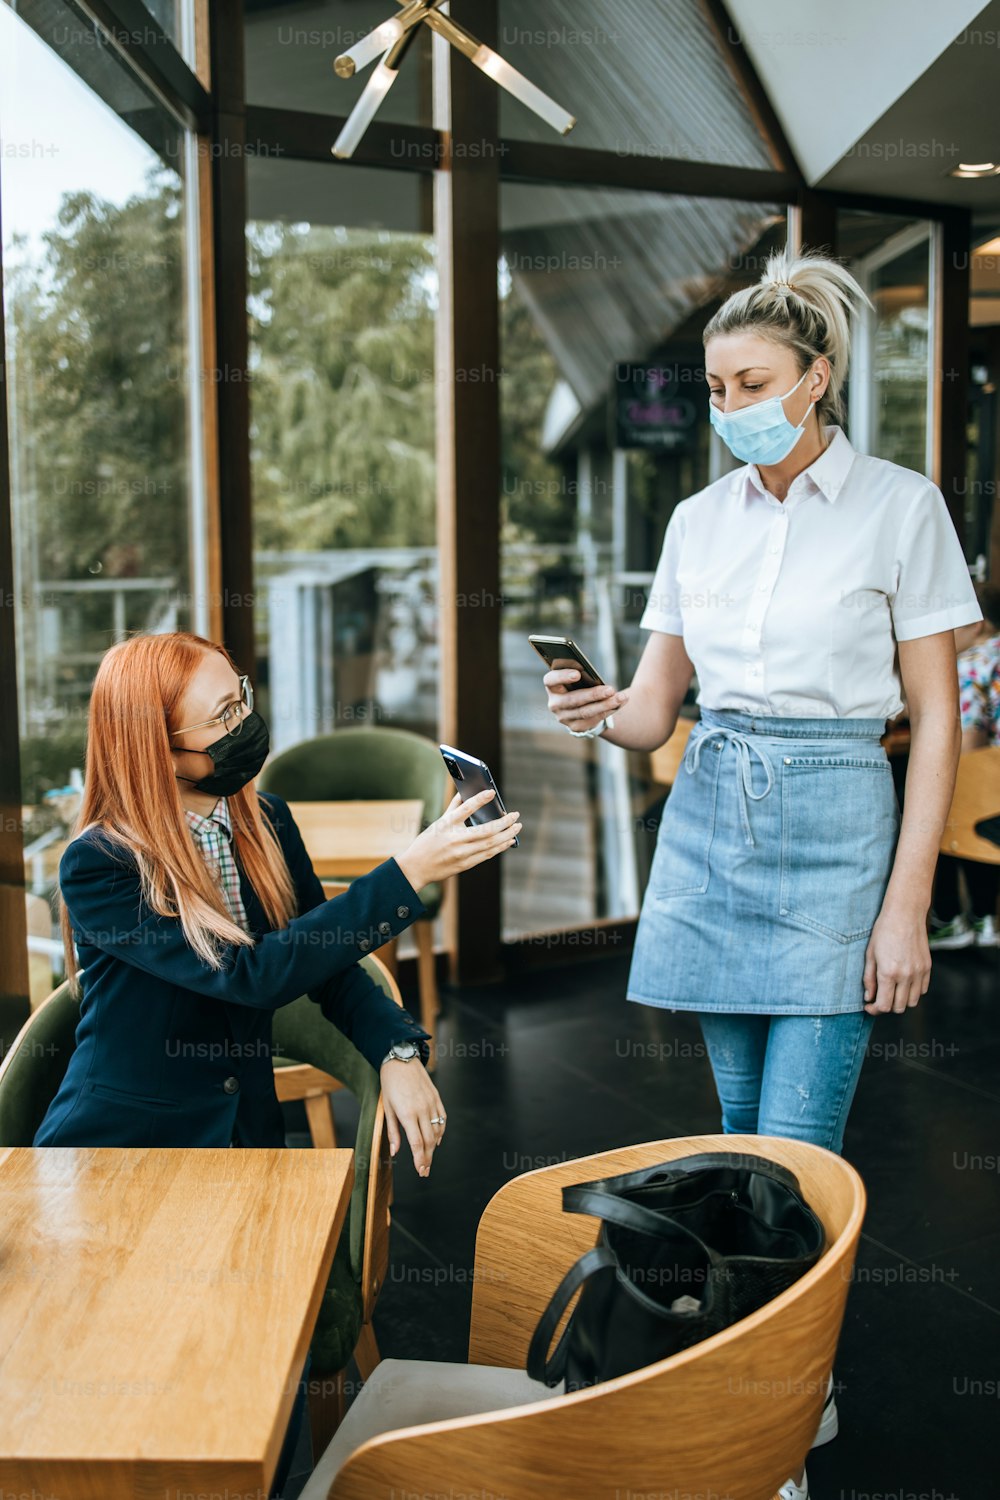 Jeune femme d’affaires attrayante assise dans un restaurant ou un café-bar et montrant le certificat numérique de vaccination Covid-19 à l’agent de sécurité. Concept de mesures de sécurité pandémiques et mondiales.